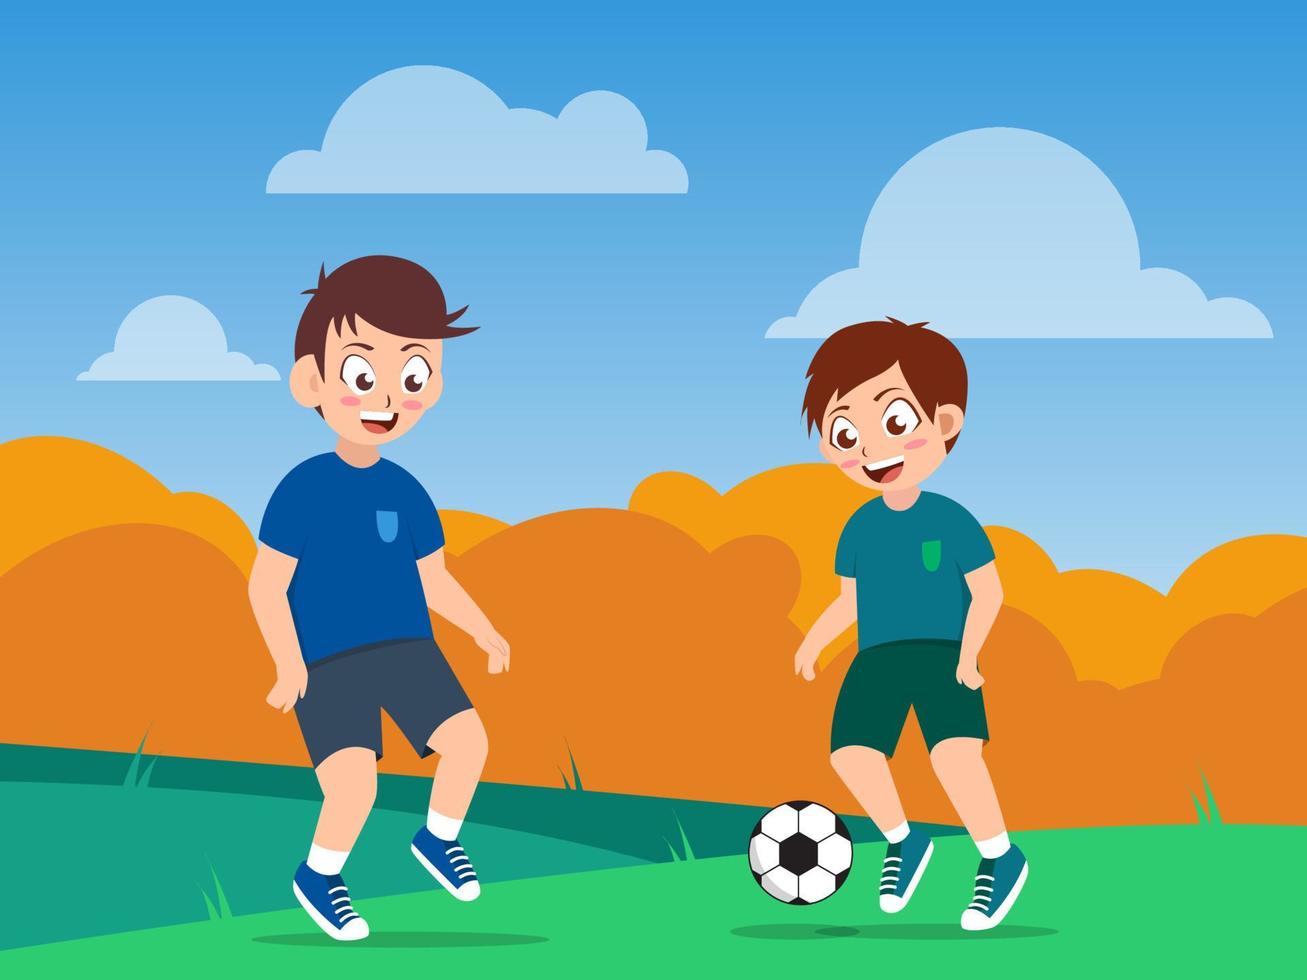 boys play football or soccer on the field, cartoon vector illustration